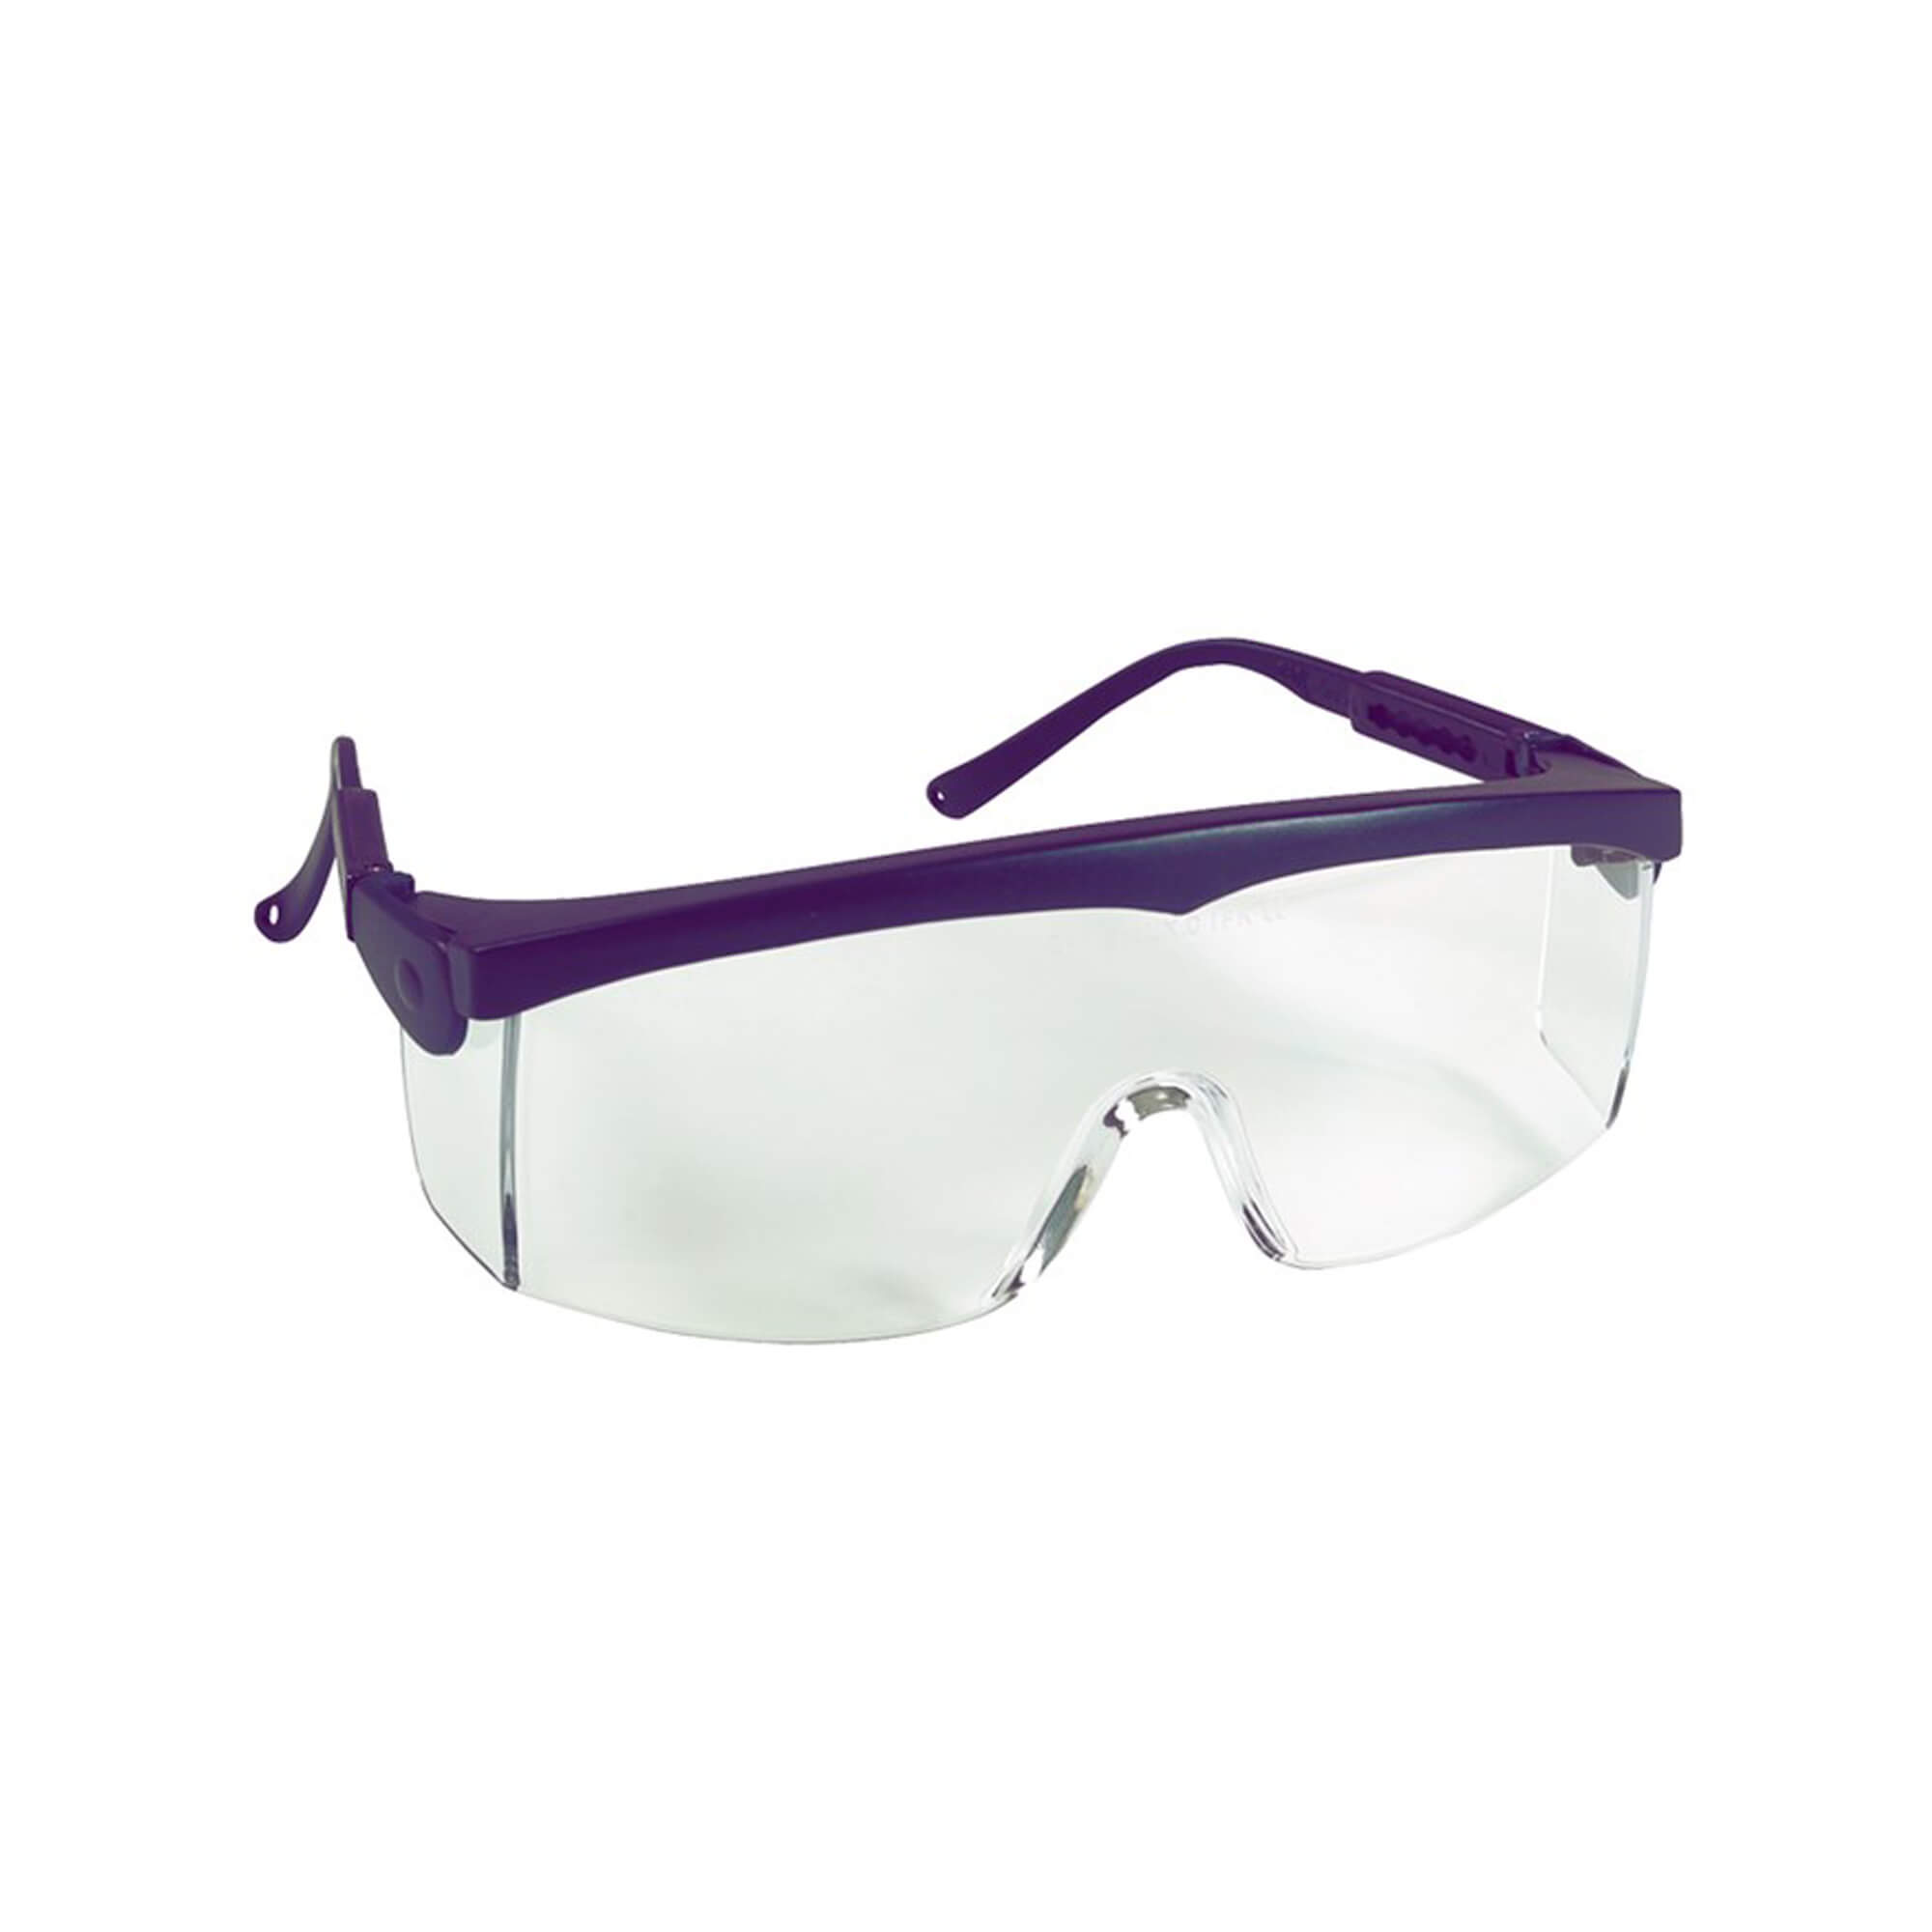 Pivolux safety glasses